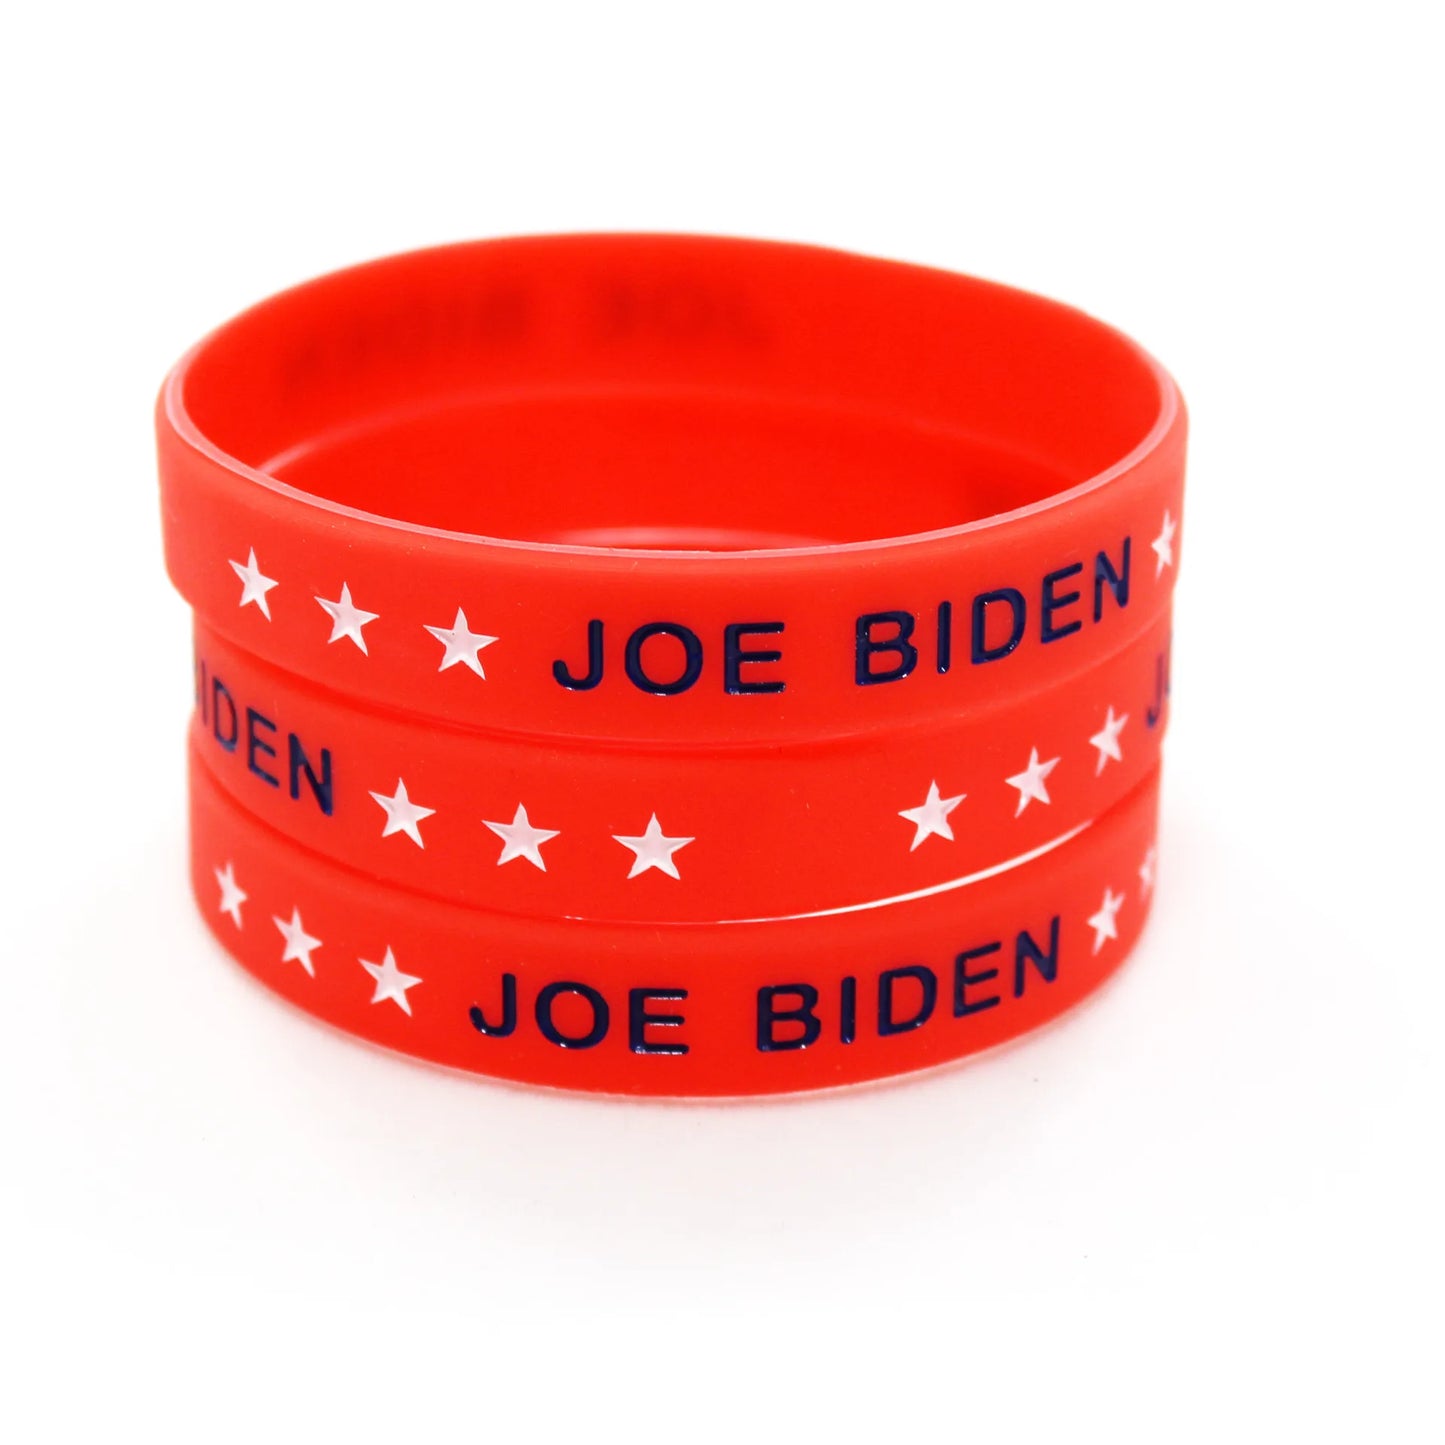 Pro-Biden - Silicone Bracelets - Joe Biden Bracelets